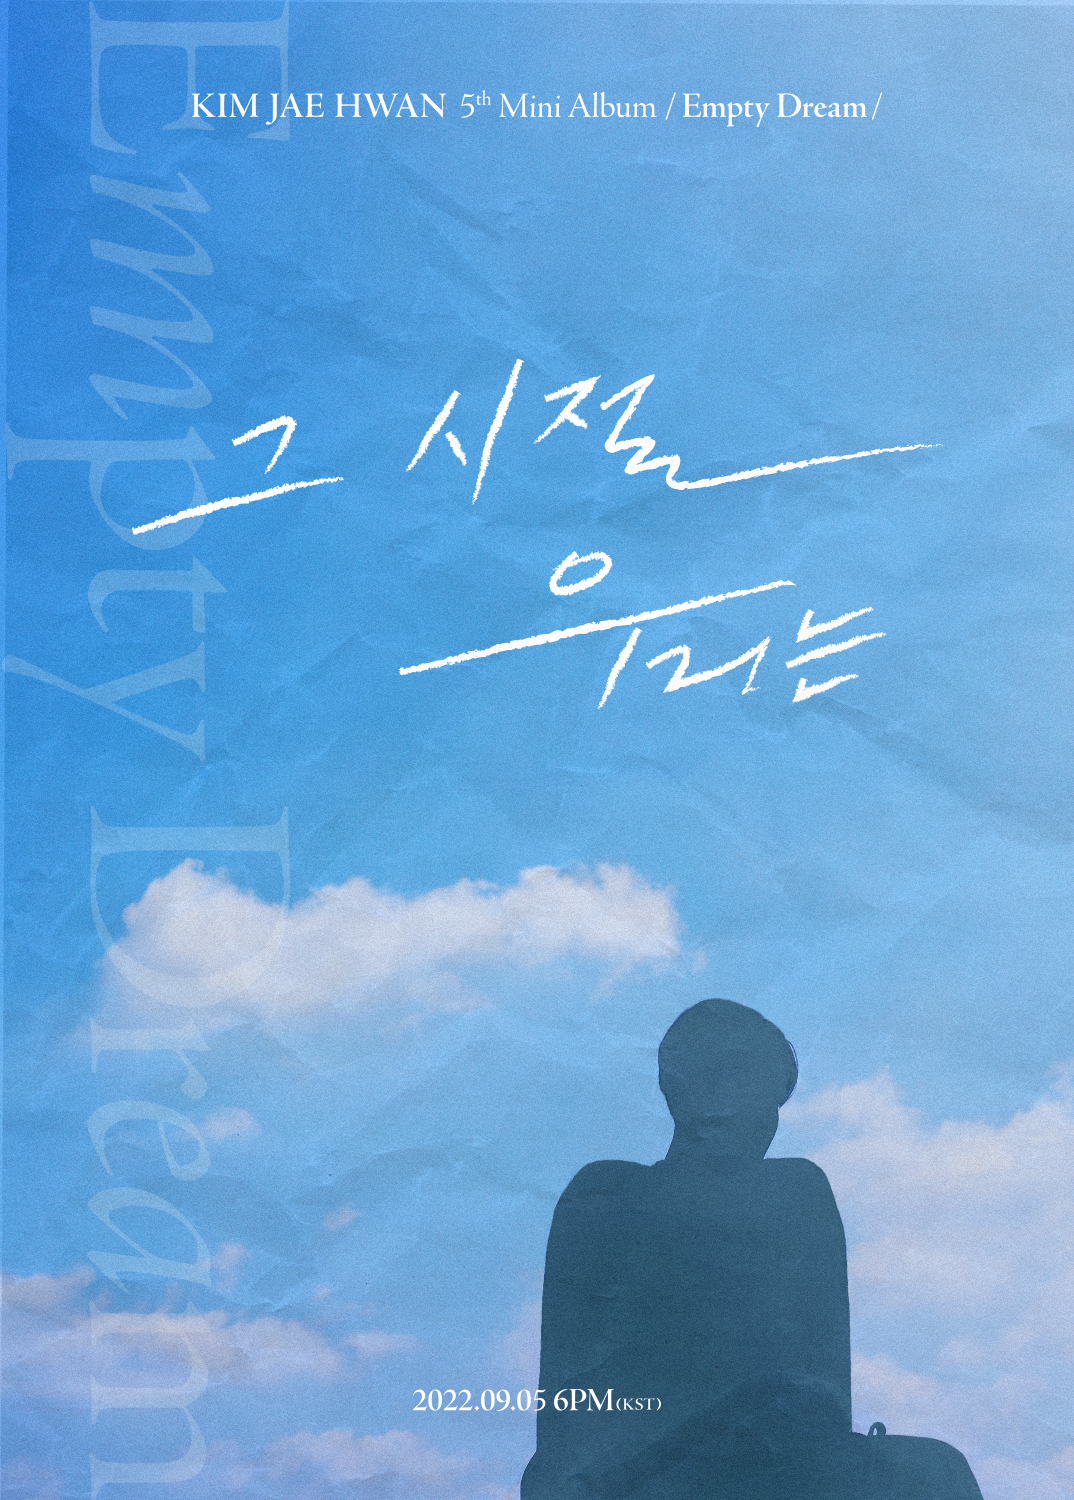 キム・ジェファン(Wanna One出身) が5thミニアルバムリリース！タイトル曲「BACK THEN (バックゼン)」でカムバック